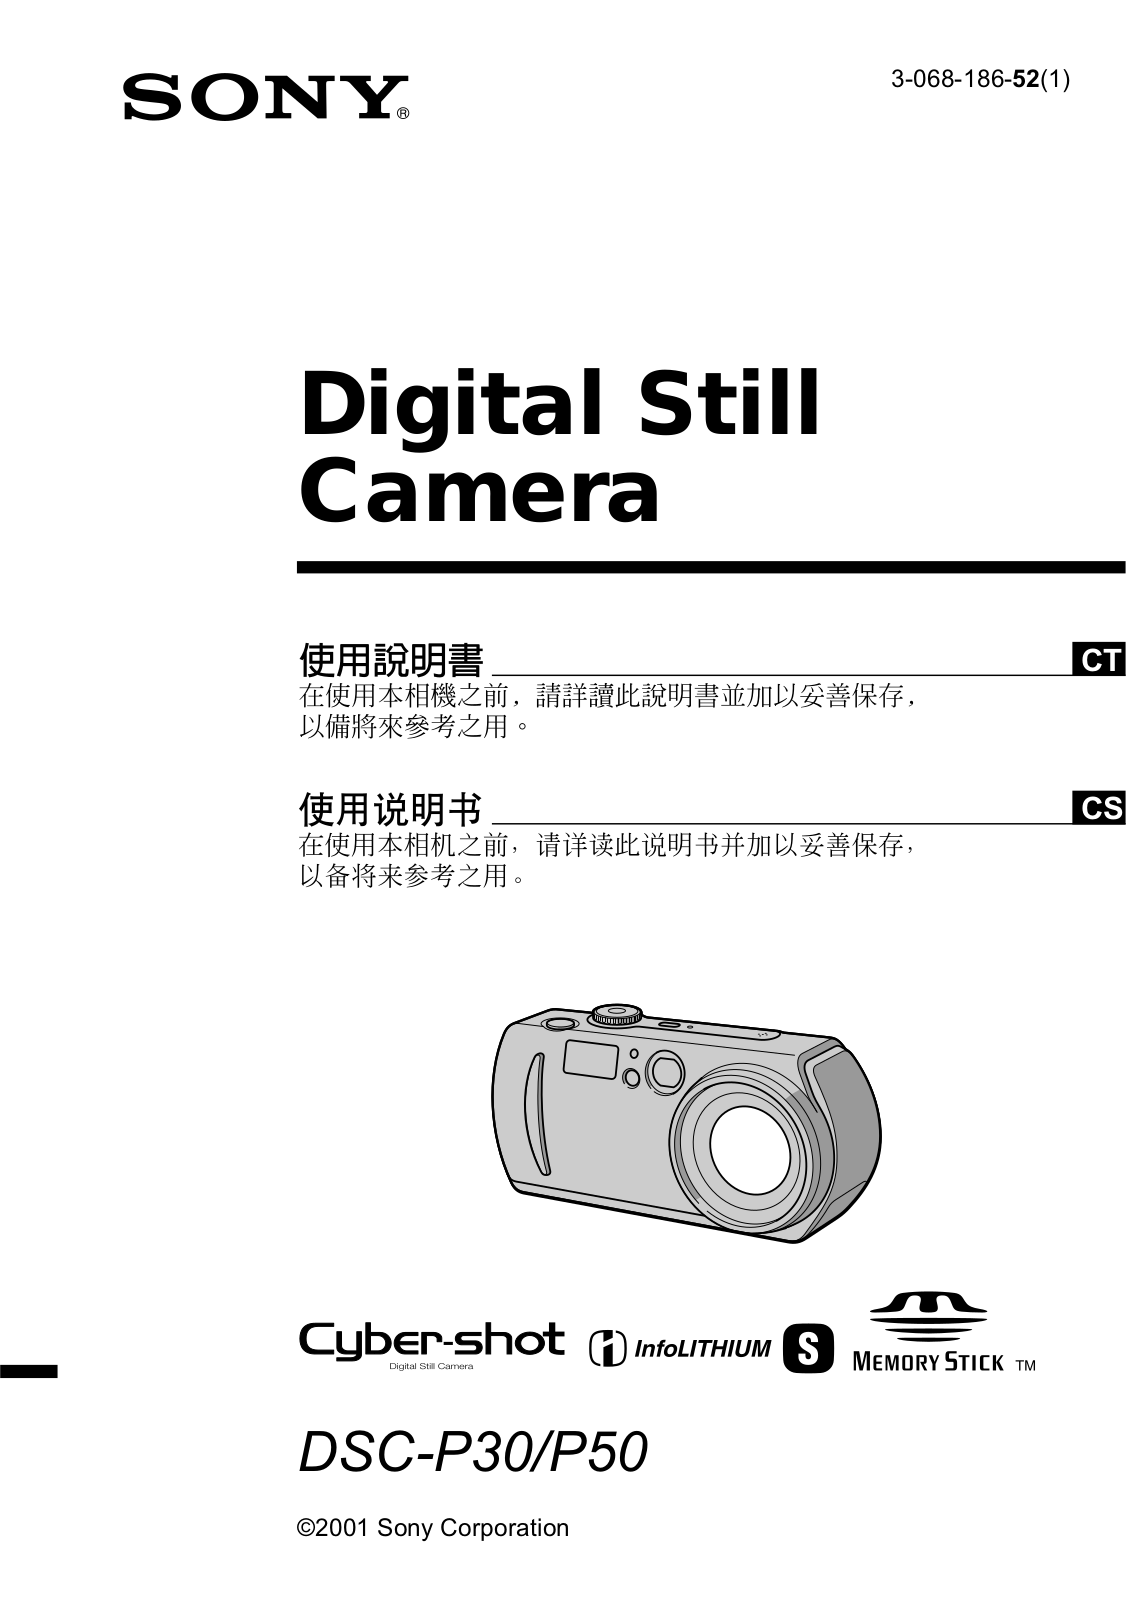 Sony CYBER-SHOT DSC-P50, CYBER-SHOT DSC-P30 User Manual